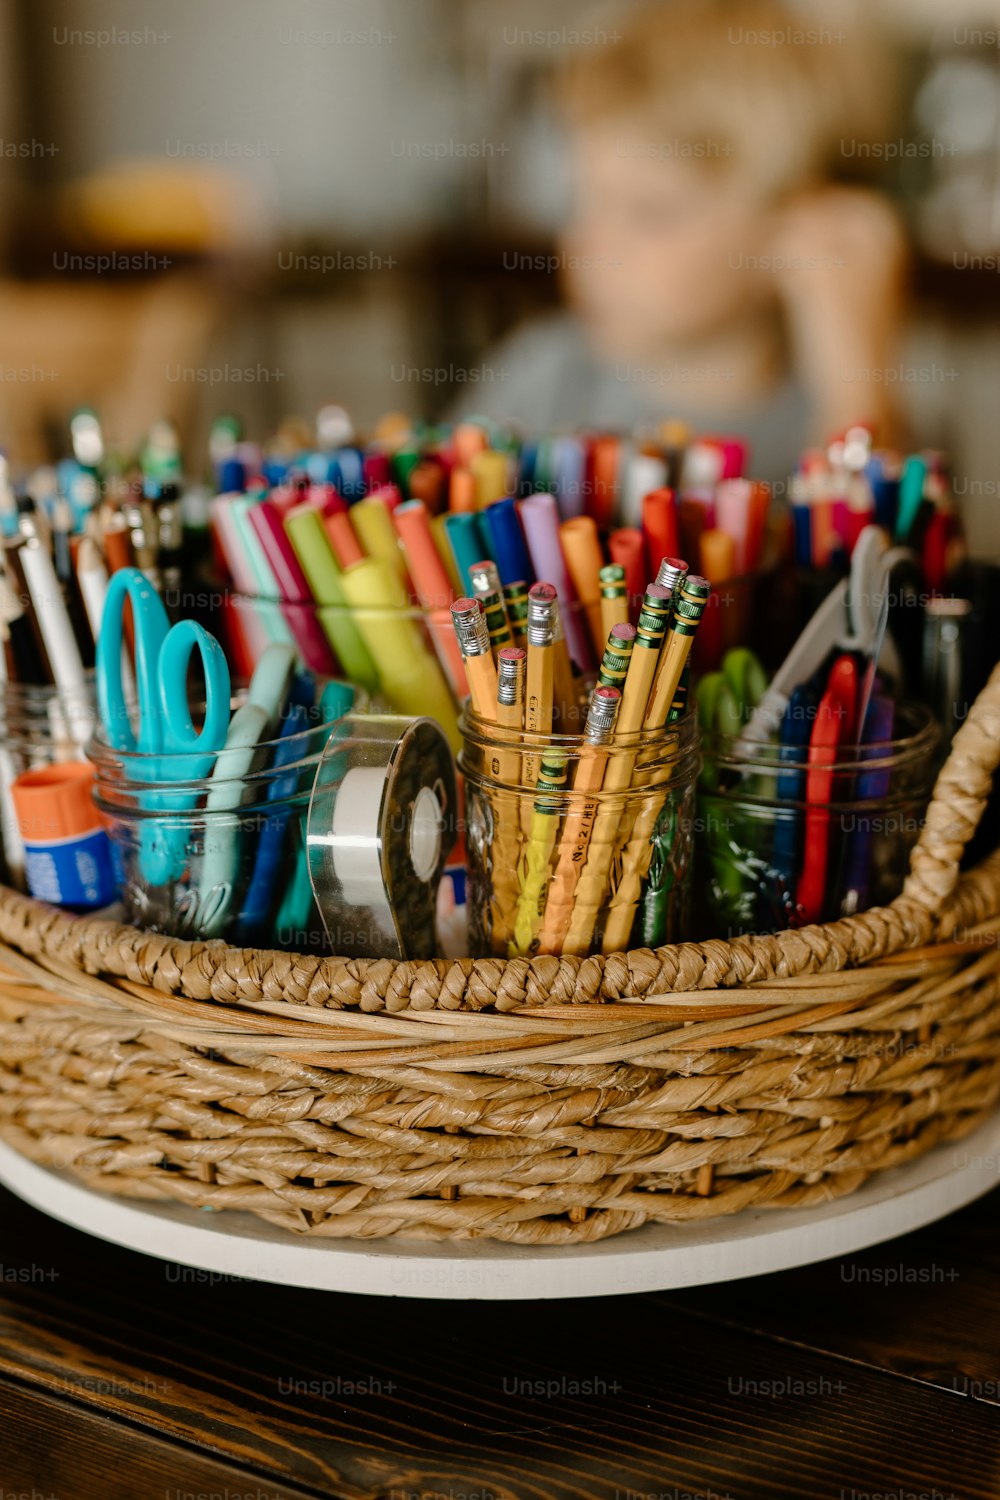 Ein Korb gefüllt mit vielen verschiedenfarbigen Stiften und Scheren